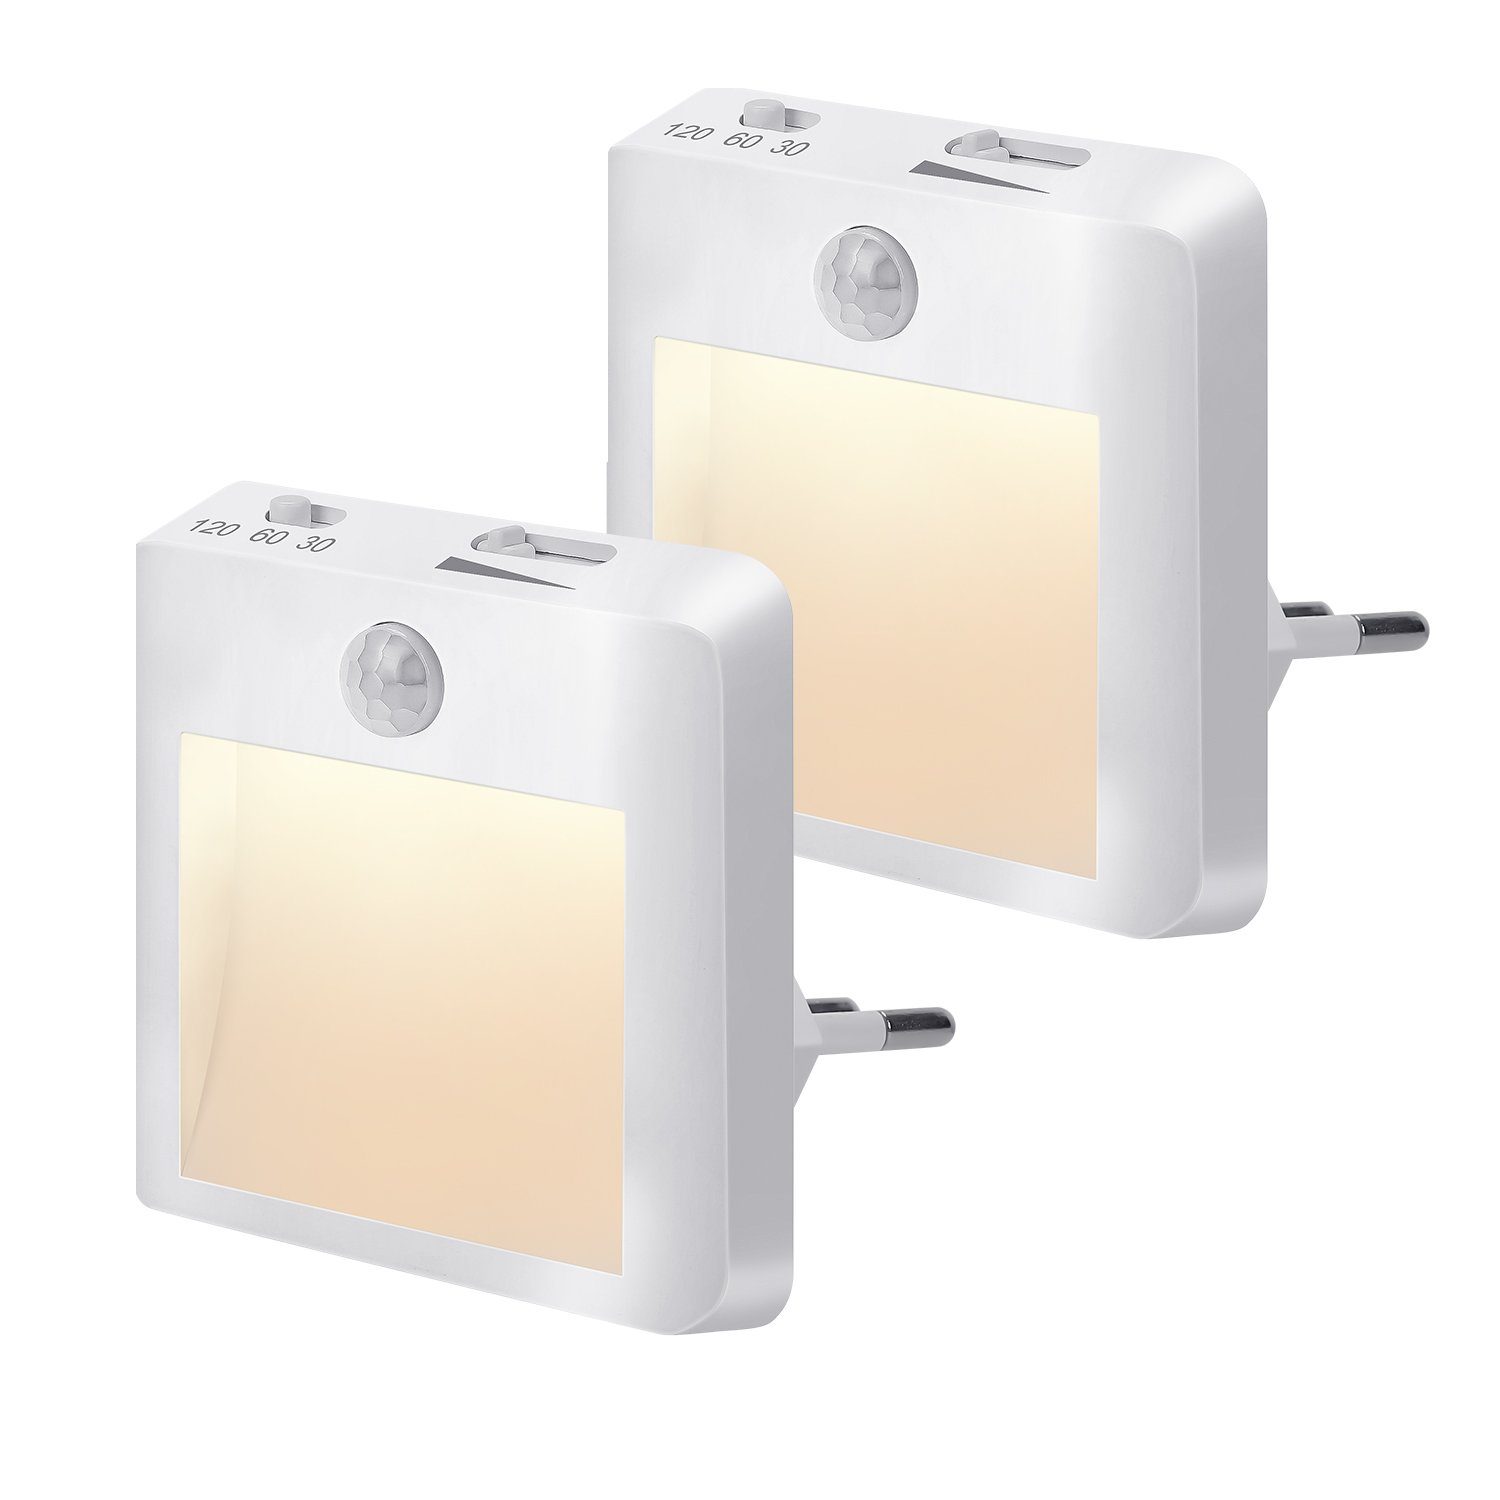 Clanmacy LED Nachtlicht 2 Stück Sensor Nacht Licht Saving LED Sensor Nacht Lampe Smart Dämmerungssensor Lampen Nachtlicht für Schlafzimmer Toiletten Treppen Flure